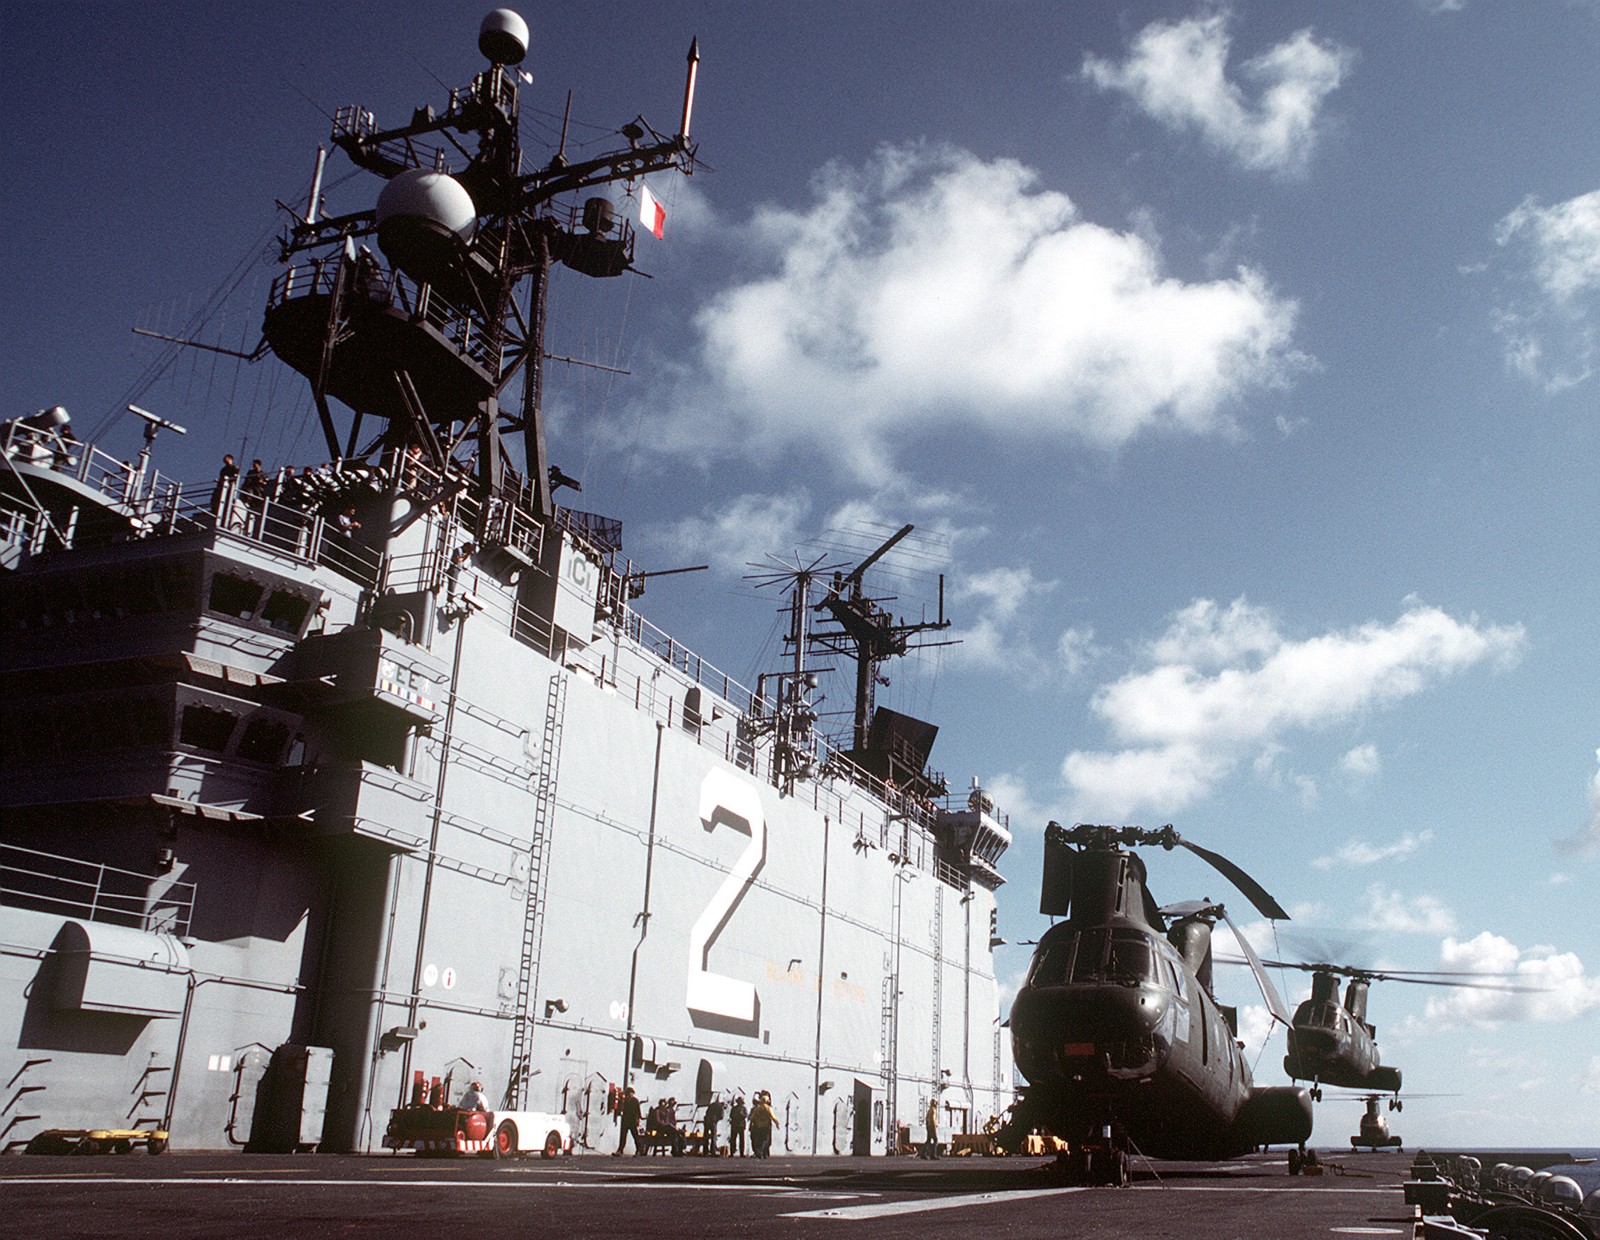 lha-2 uss saipan tarawa class amphibious assault ship us navy 32nd mau hmm-264 usmc exercise ocean venture 44